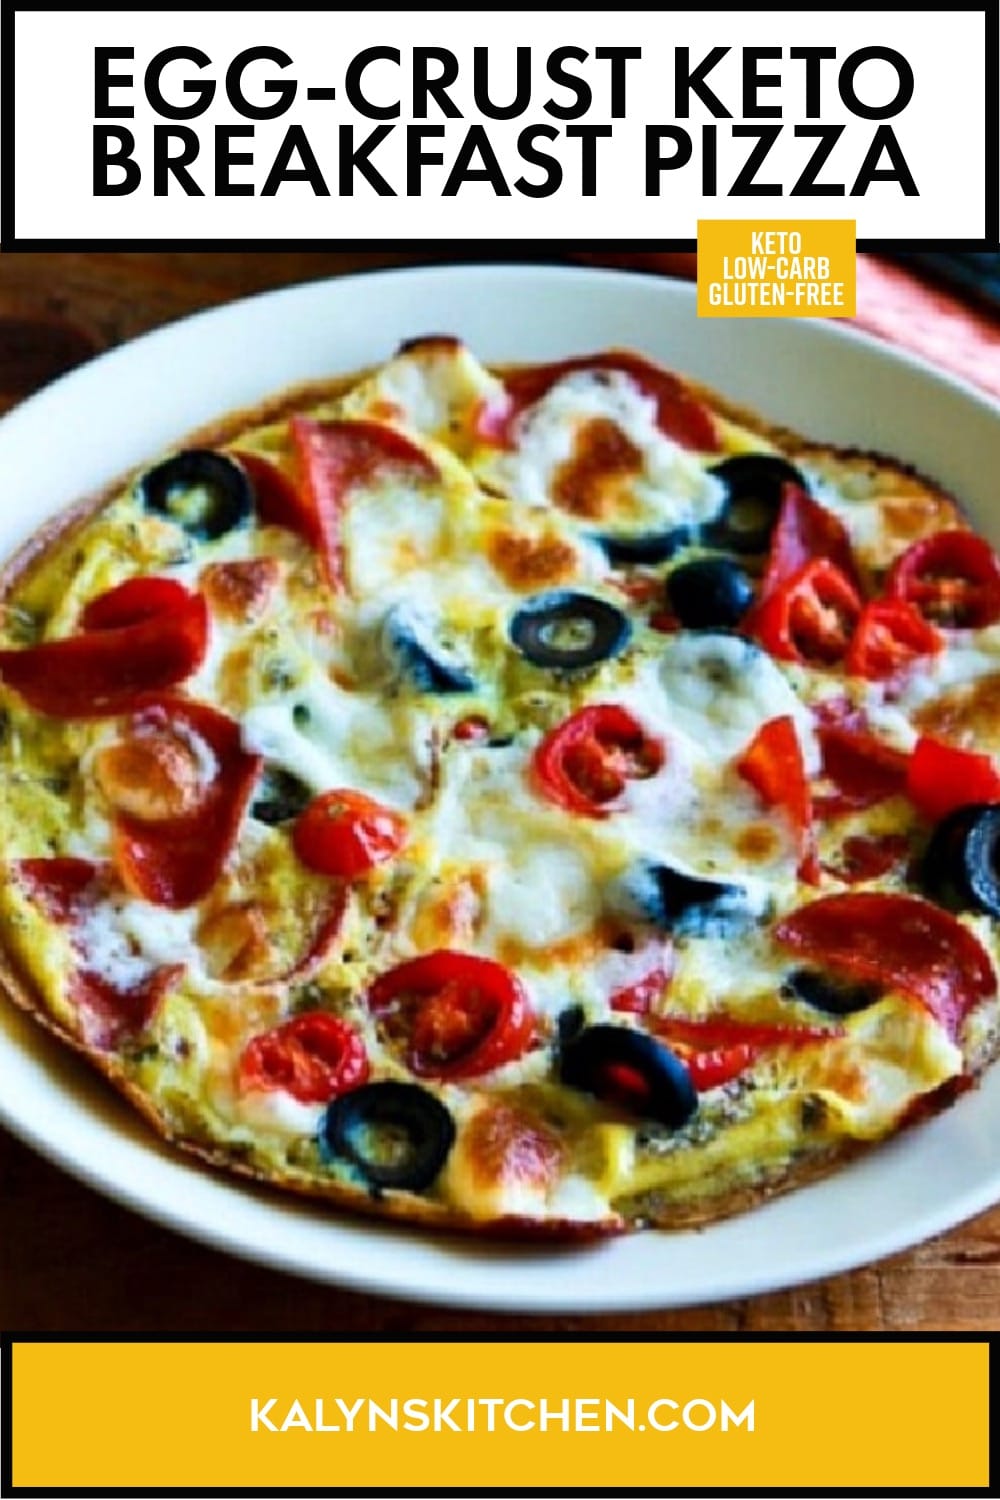 Pinterest image of Egg-Crust Keto Breakfast Pizza